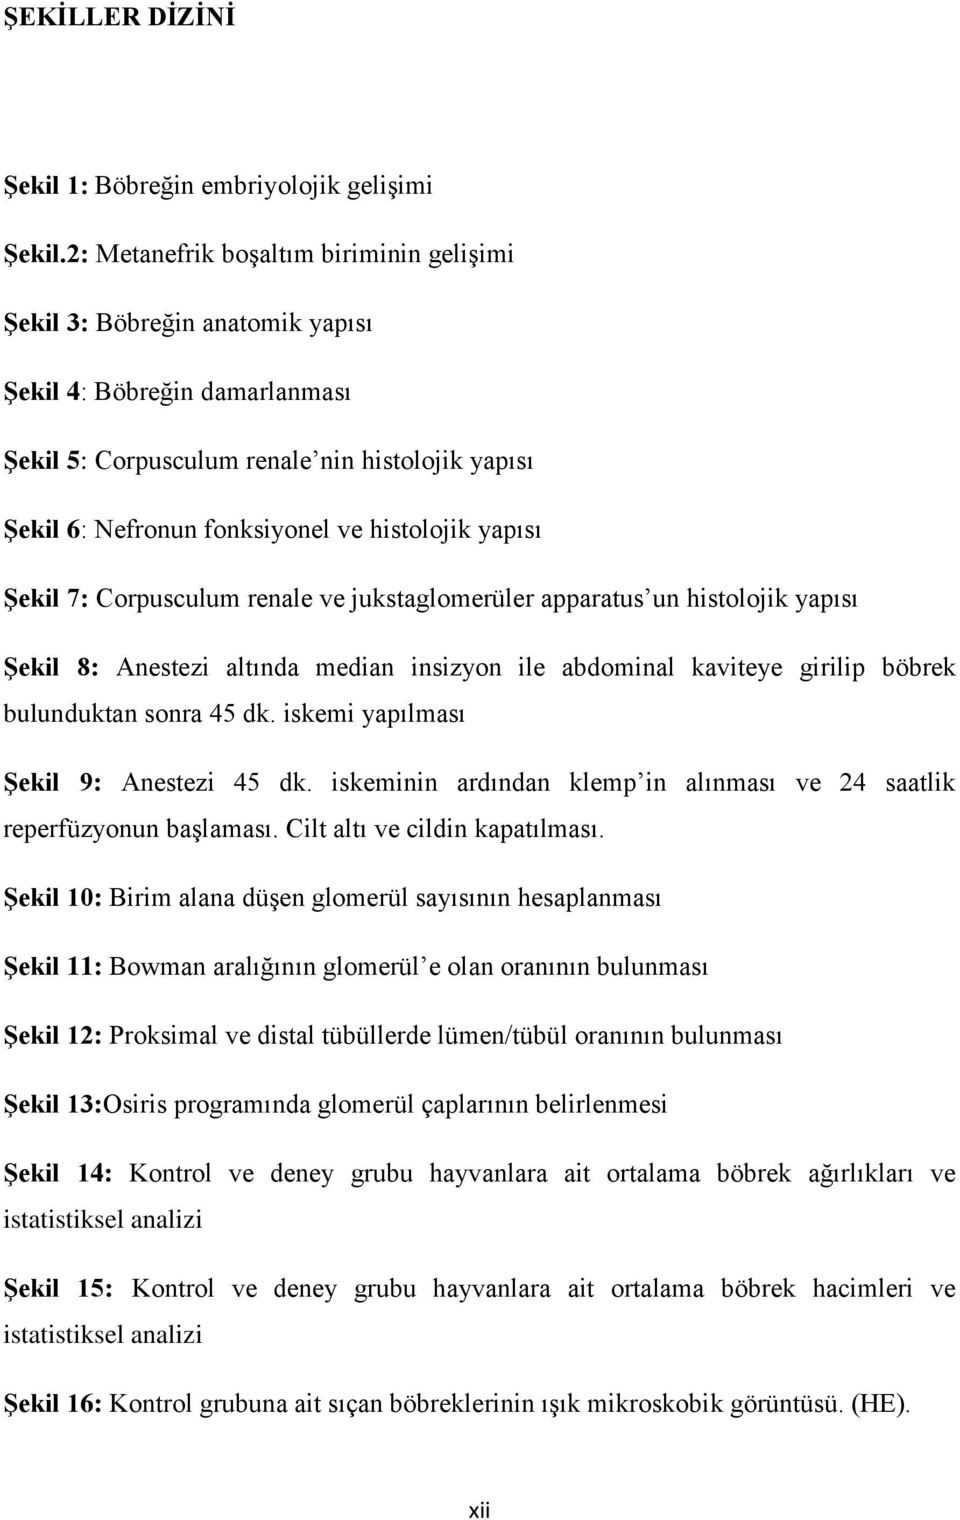 histolojik yapısı ġekil 7: Corpusculum renale ve jukstaglomerüler apparatus un histolojik yapısı ġekil 8: Anestezi altında median insizyon ile abdominal kaviteye girilip böbrek bulunduktan sonra 45